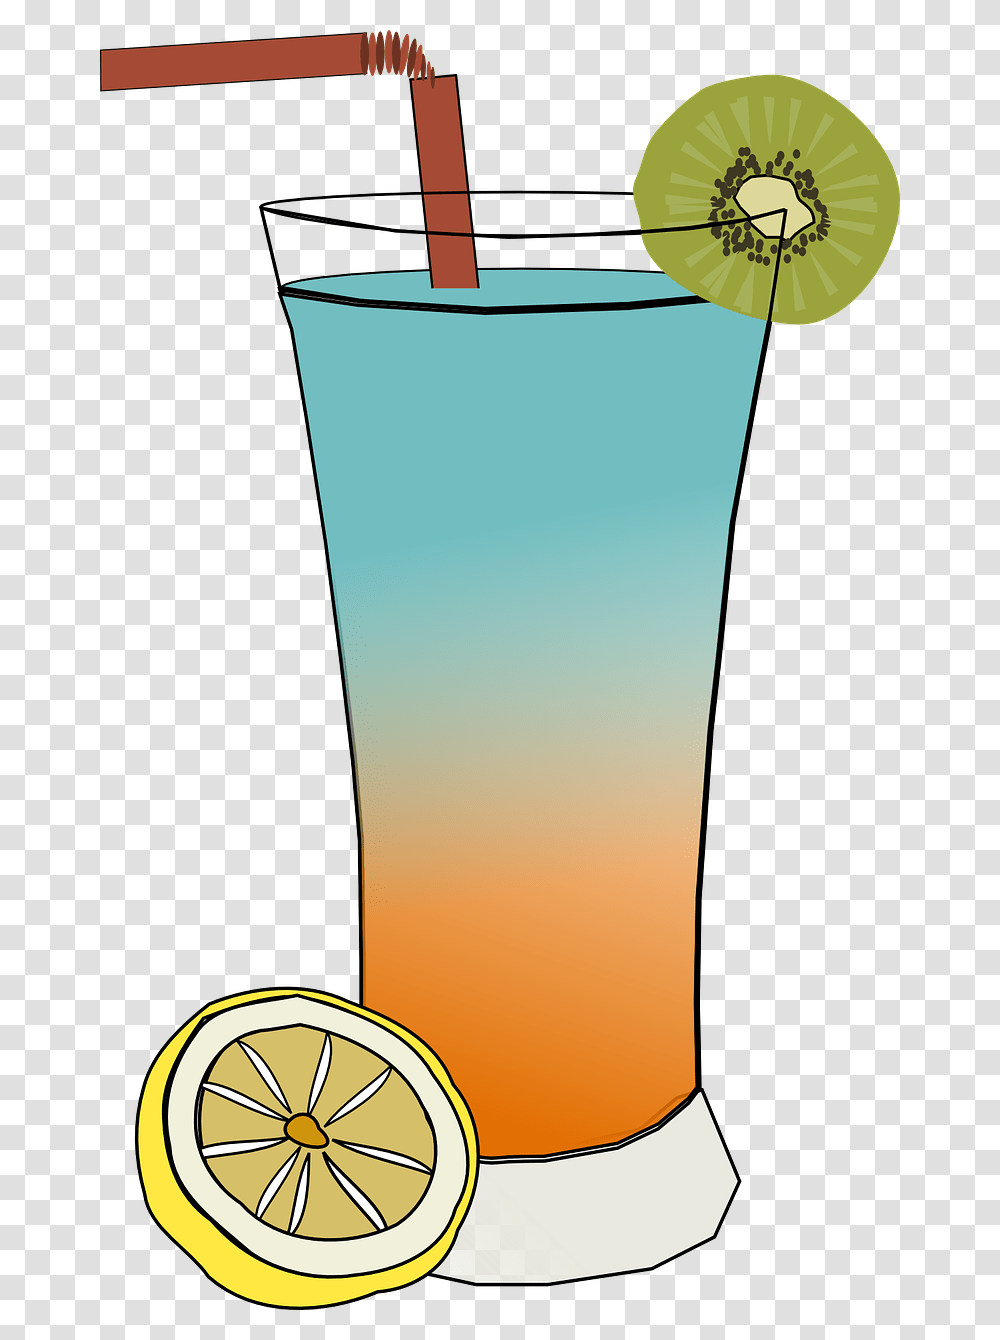 Cold Drink Clip Art, Beverage, Alcohol, Bottle, Glass Transparent Png